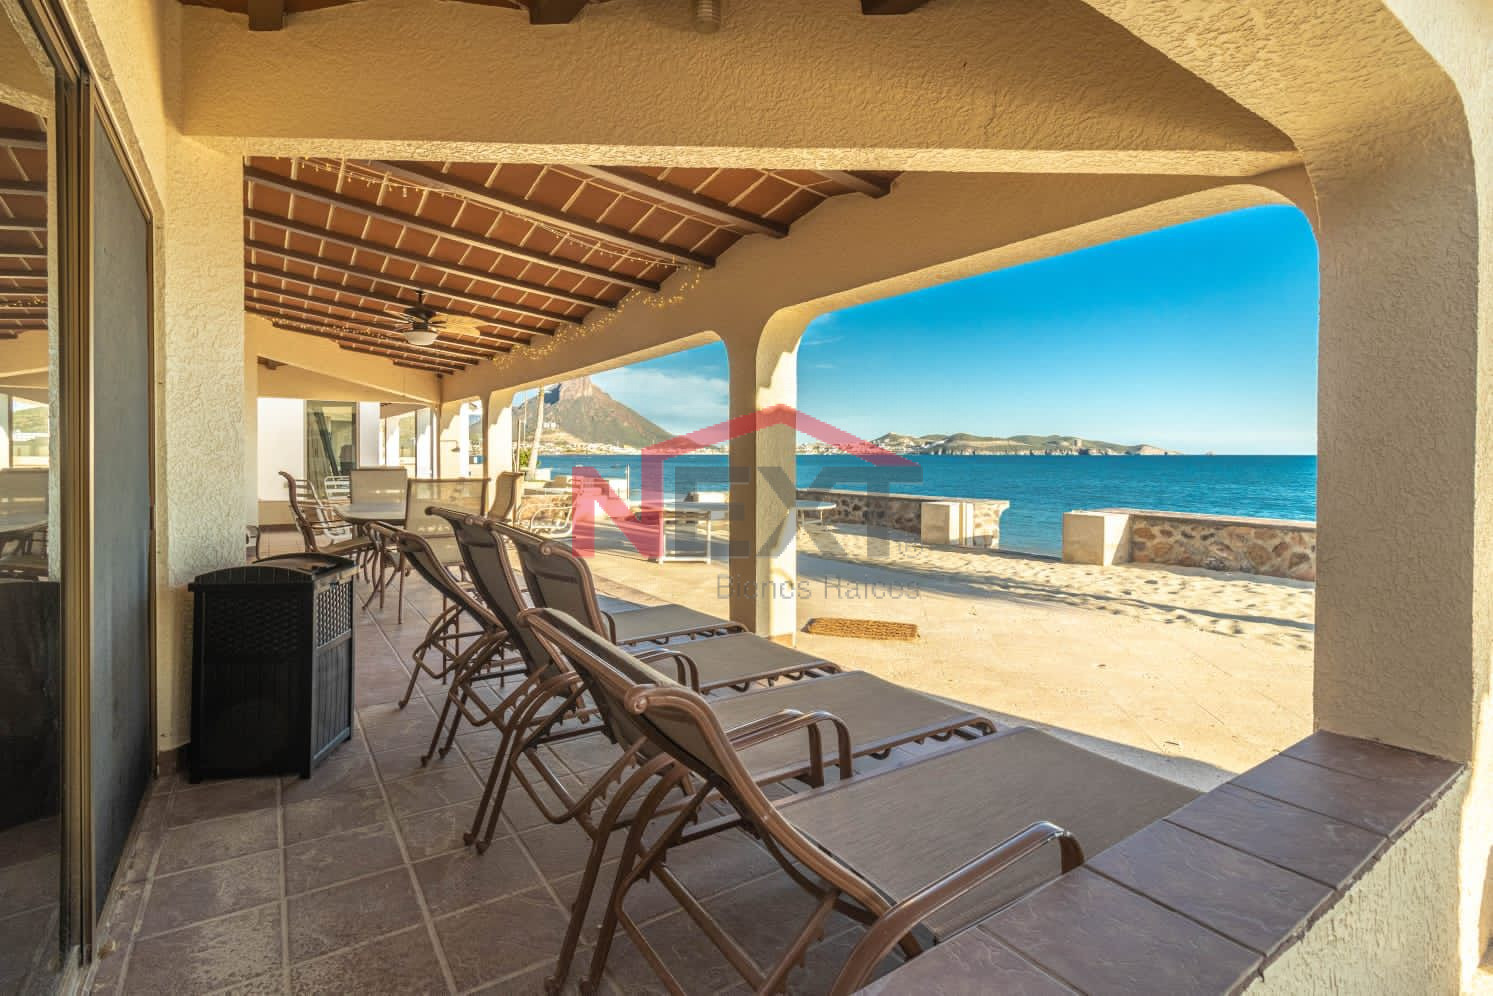 SE RENTA- Casa frente a la playa en Costa del Mar.